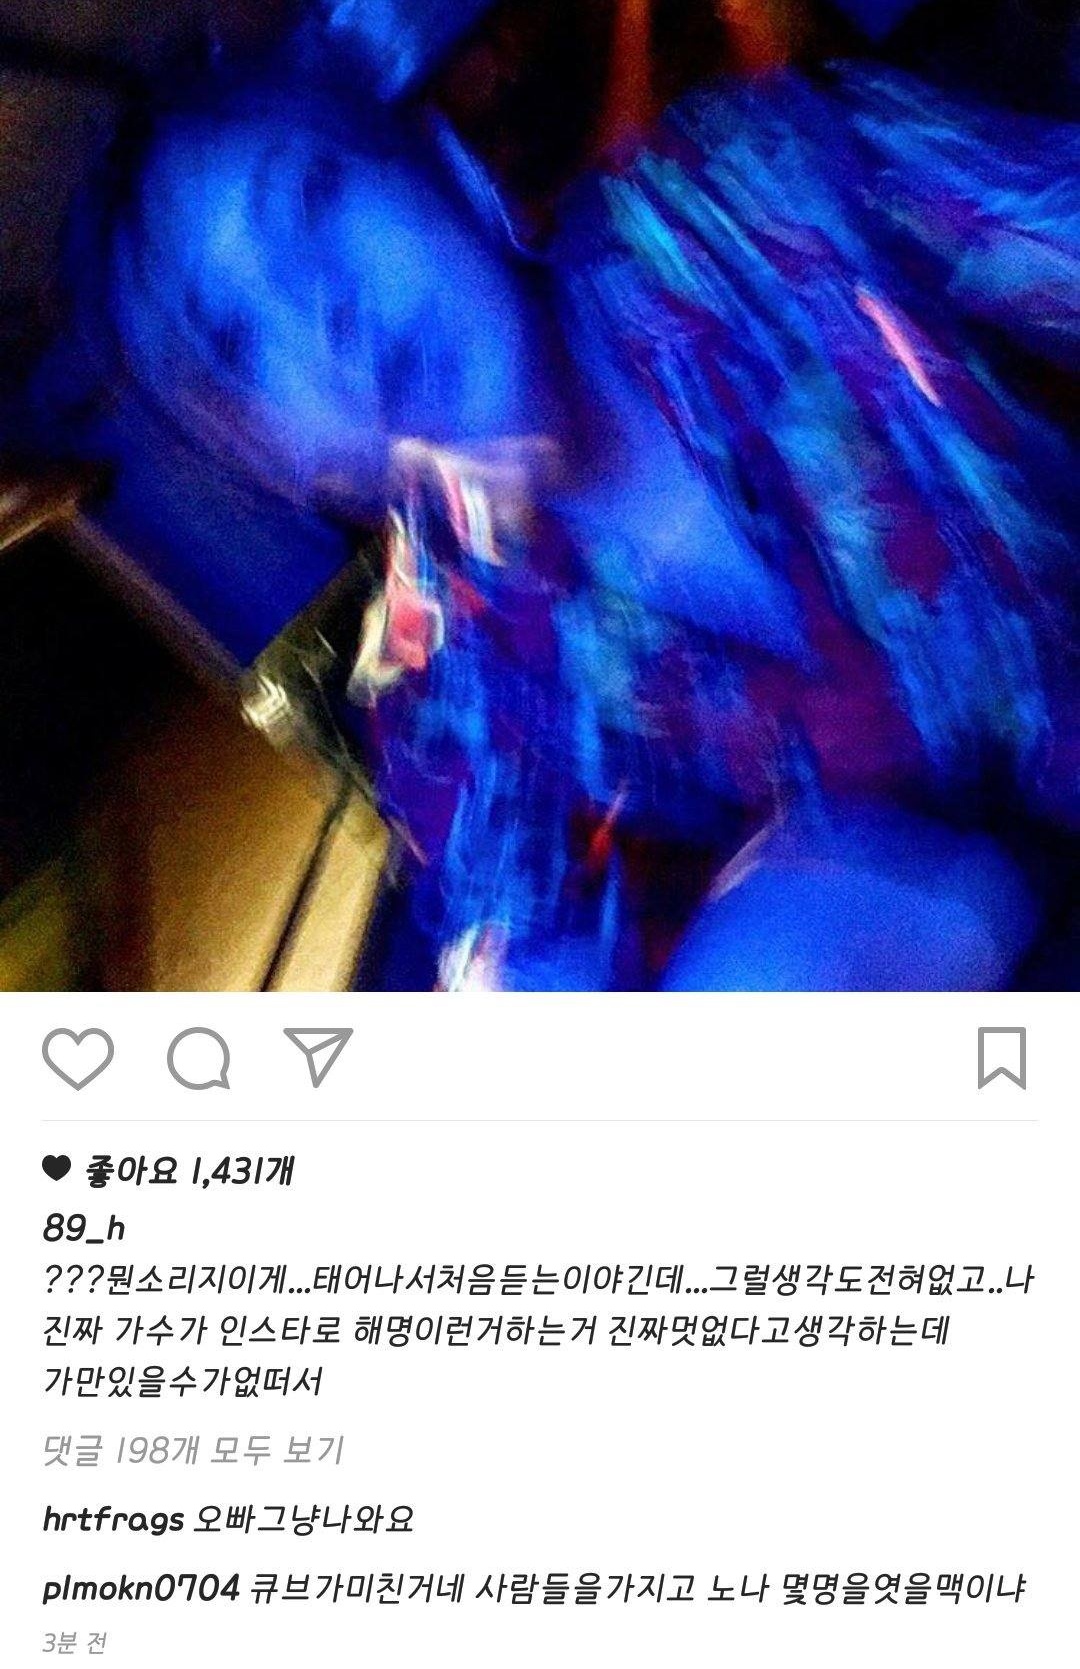 Postingan Hyunseung soal Beast debut ulang © instagram.com/89_h